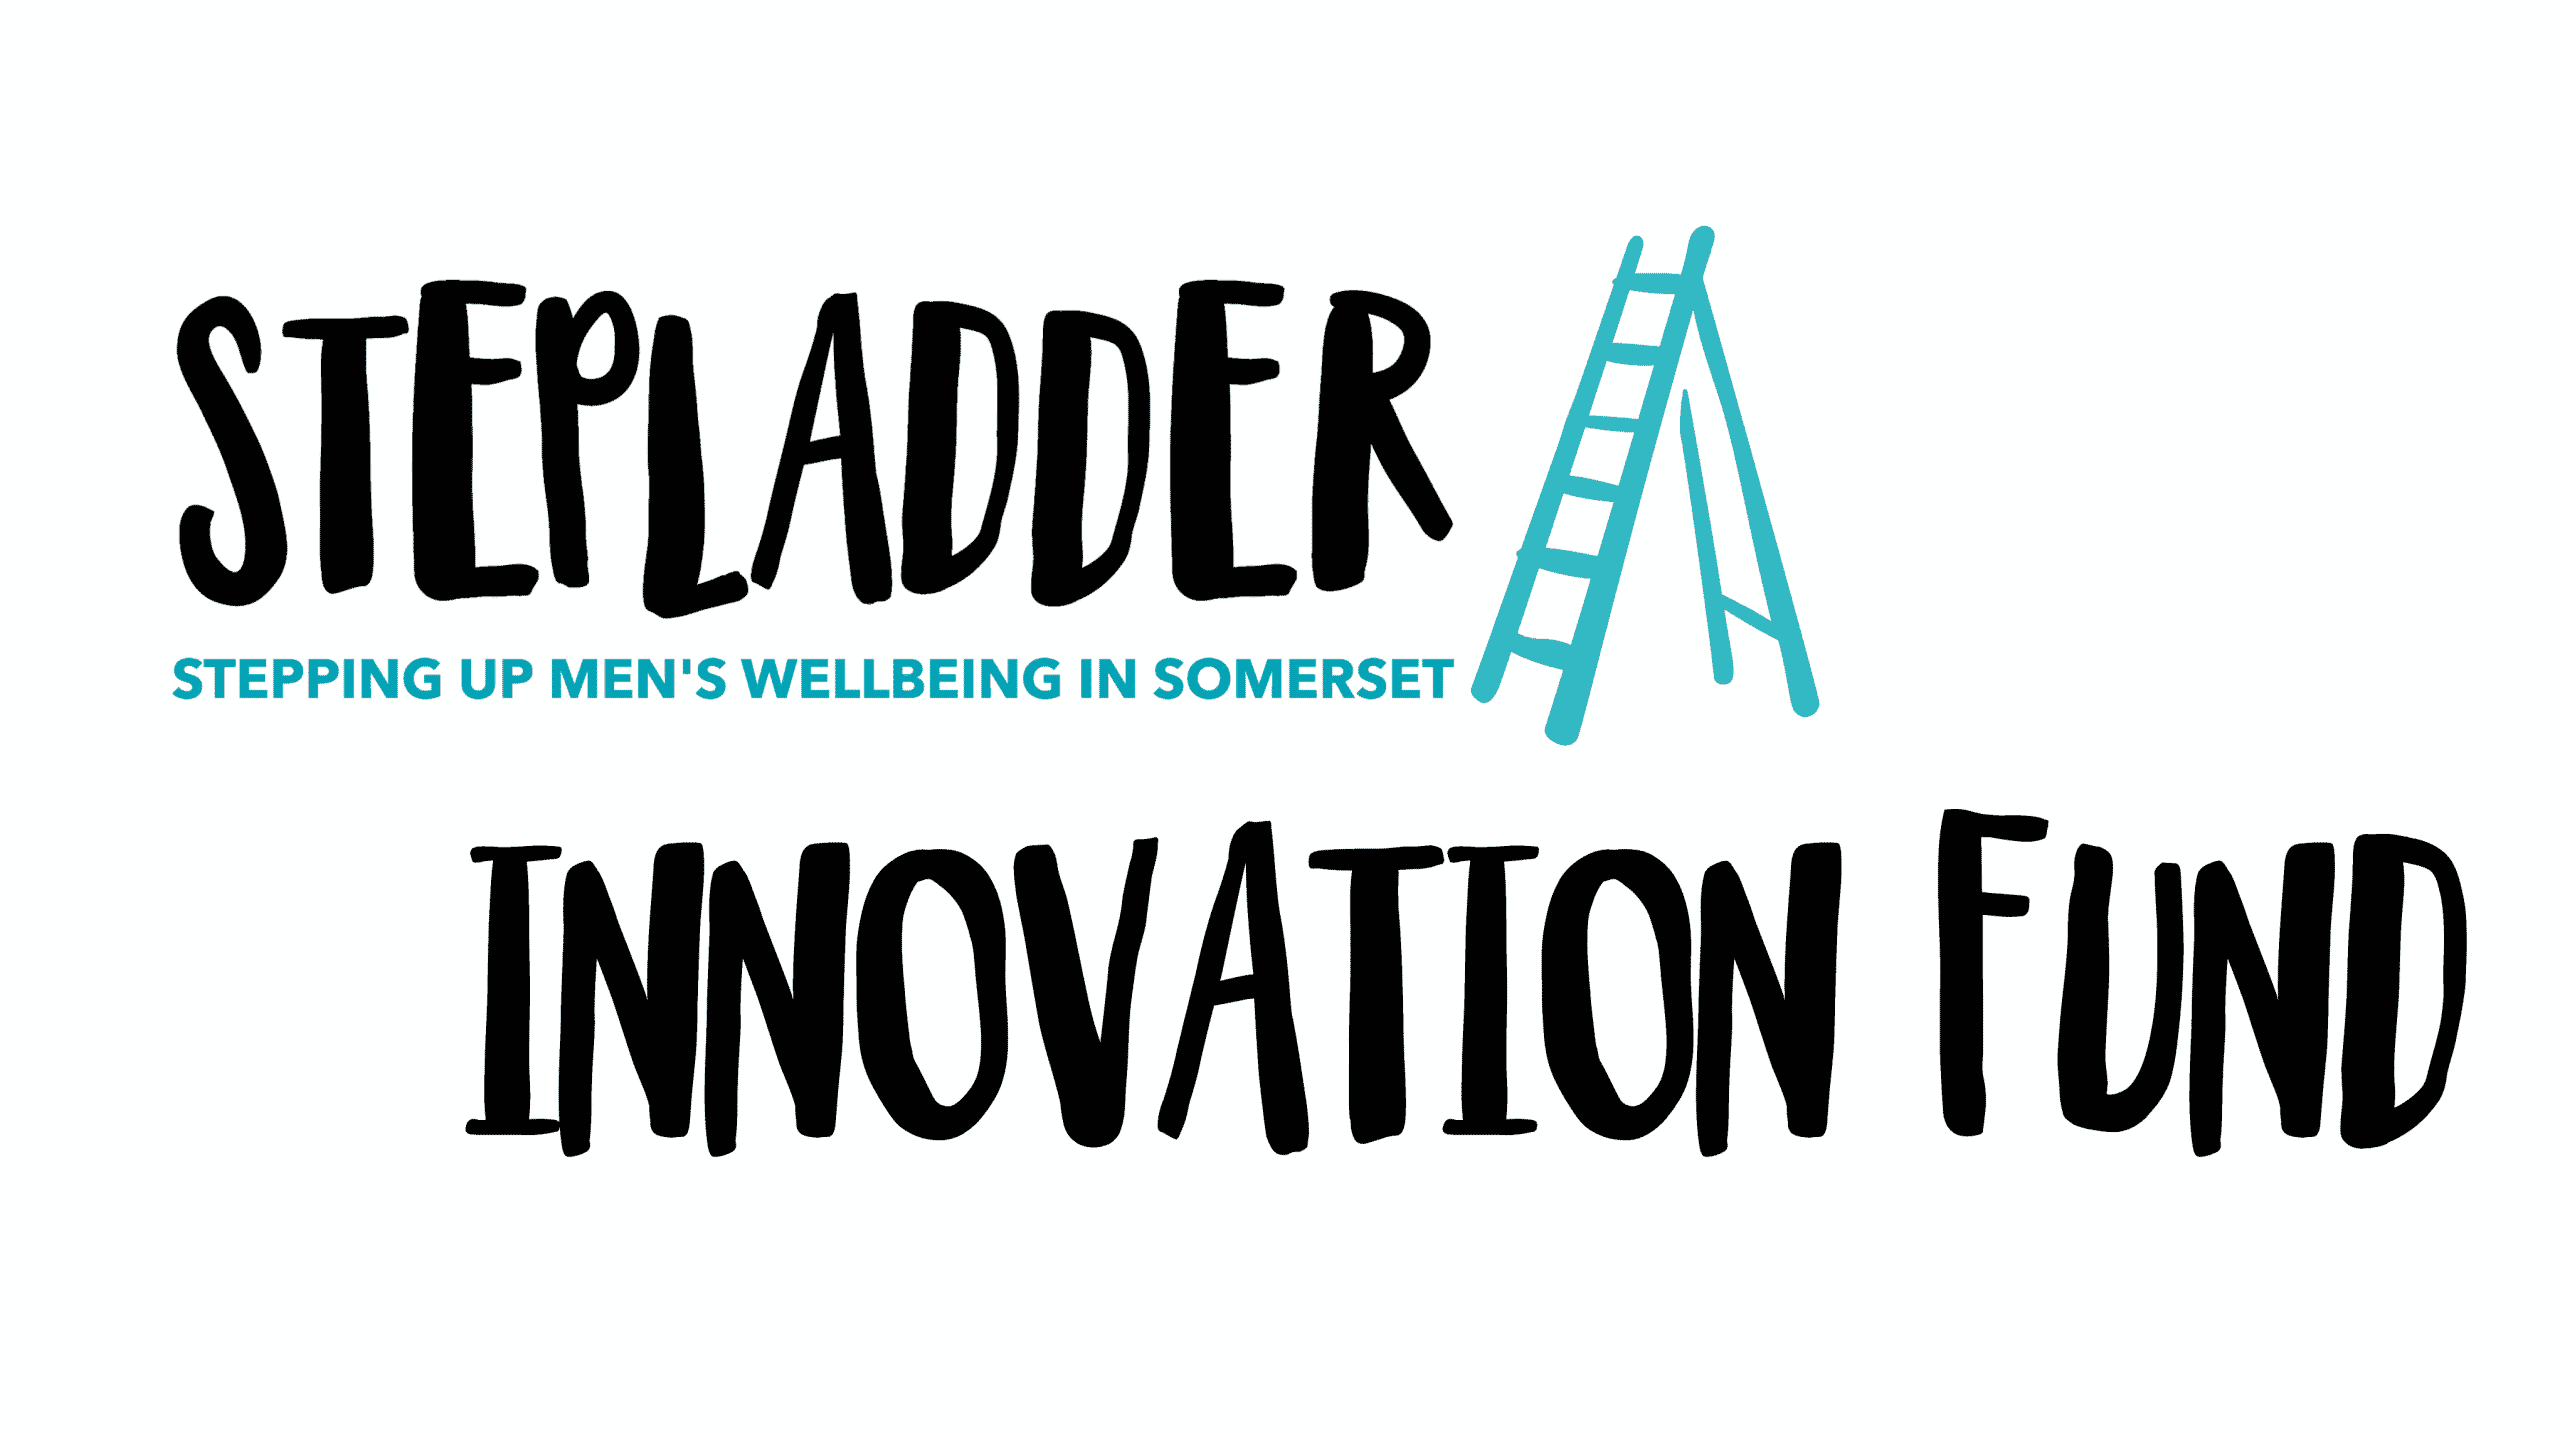 Stepladder Innovation Fund for web